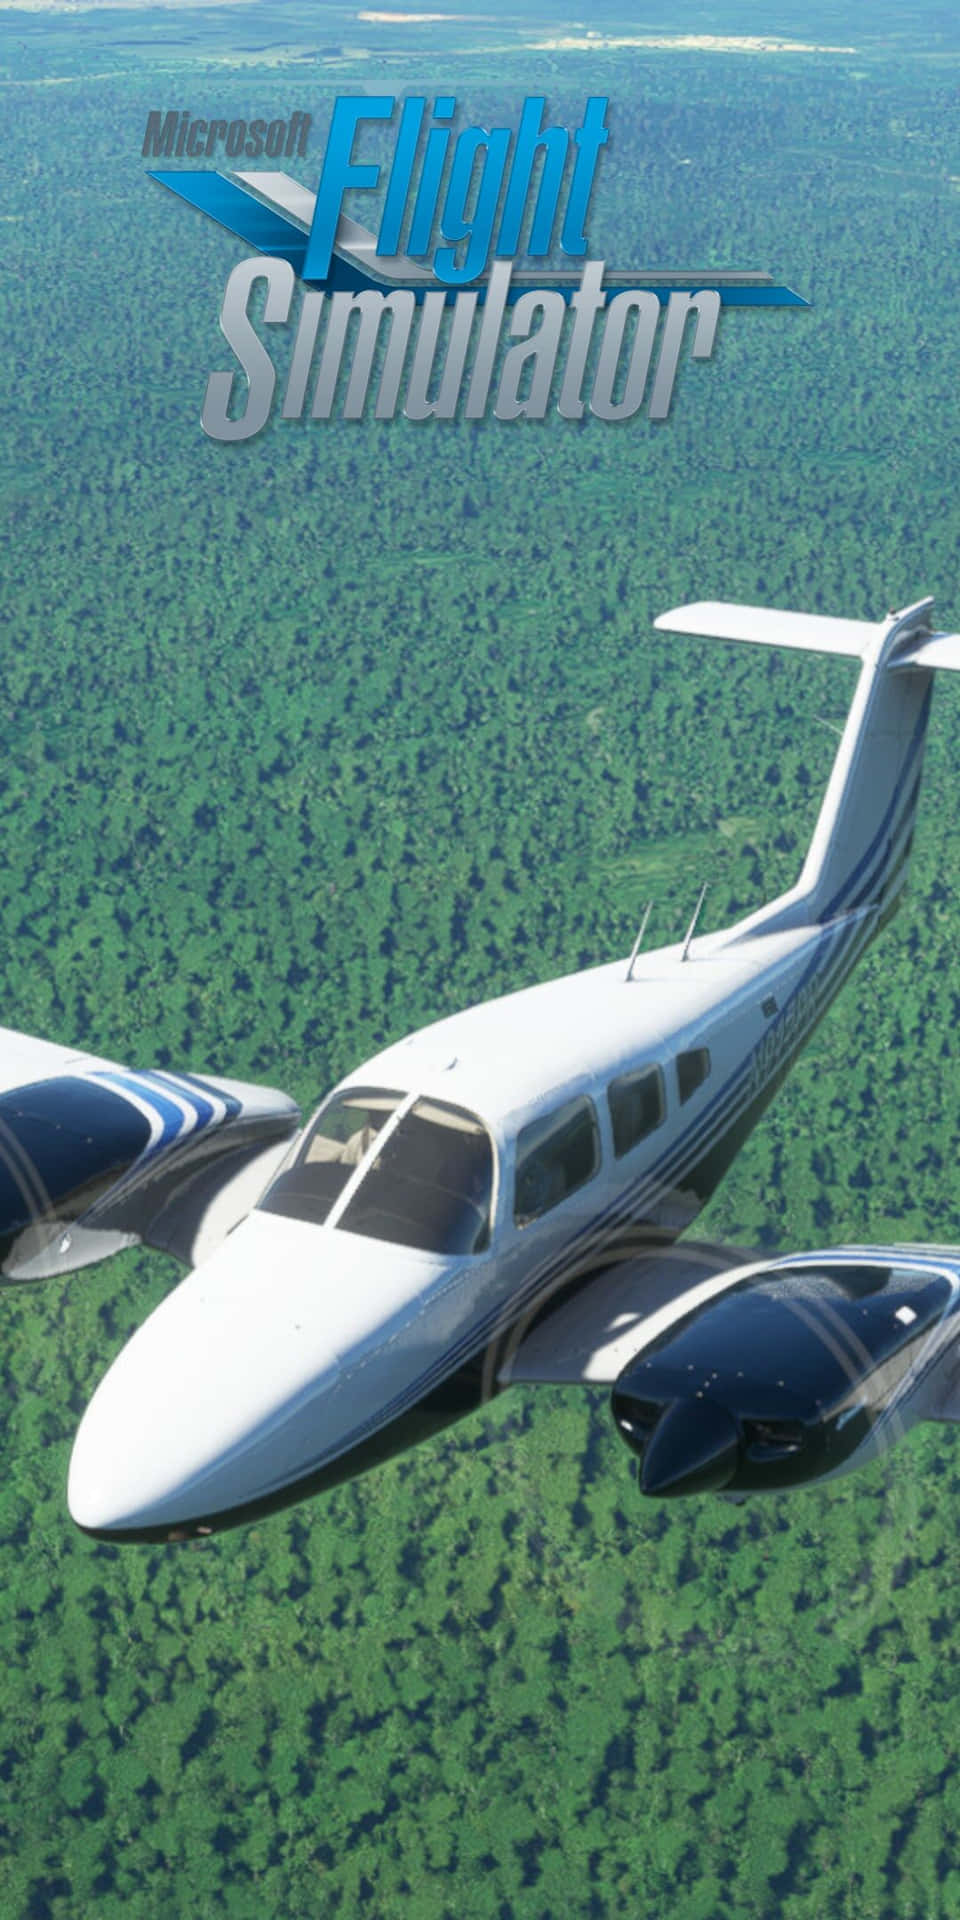 Pixel 3 Brings Microsoft Flight Simulator to Life